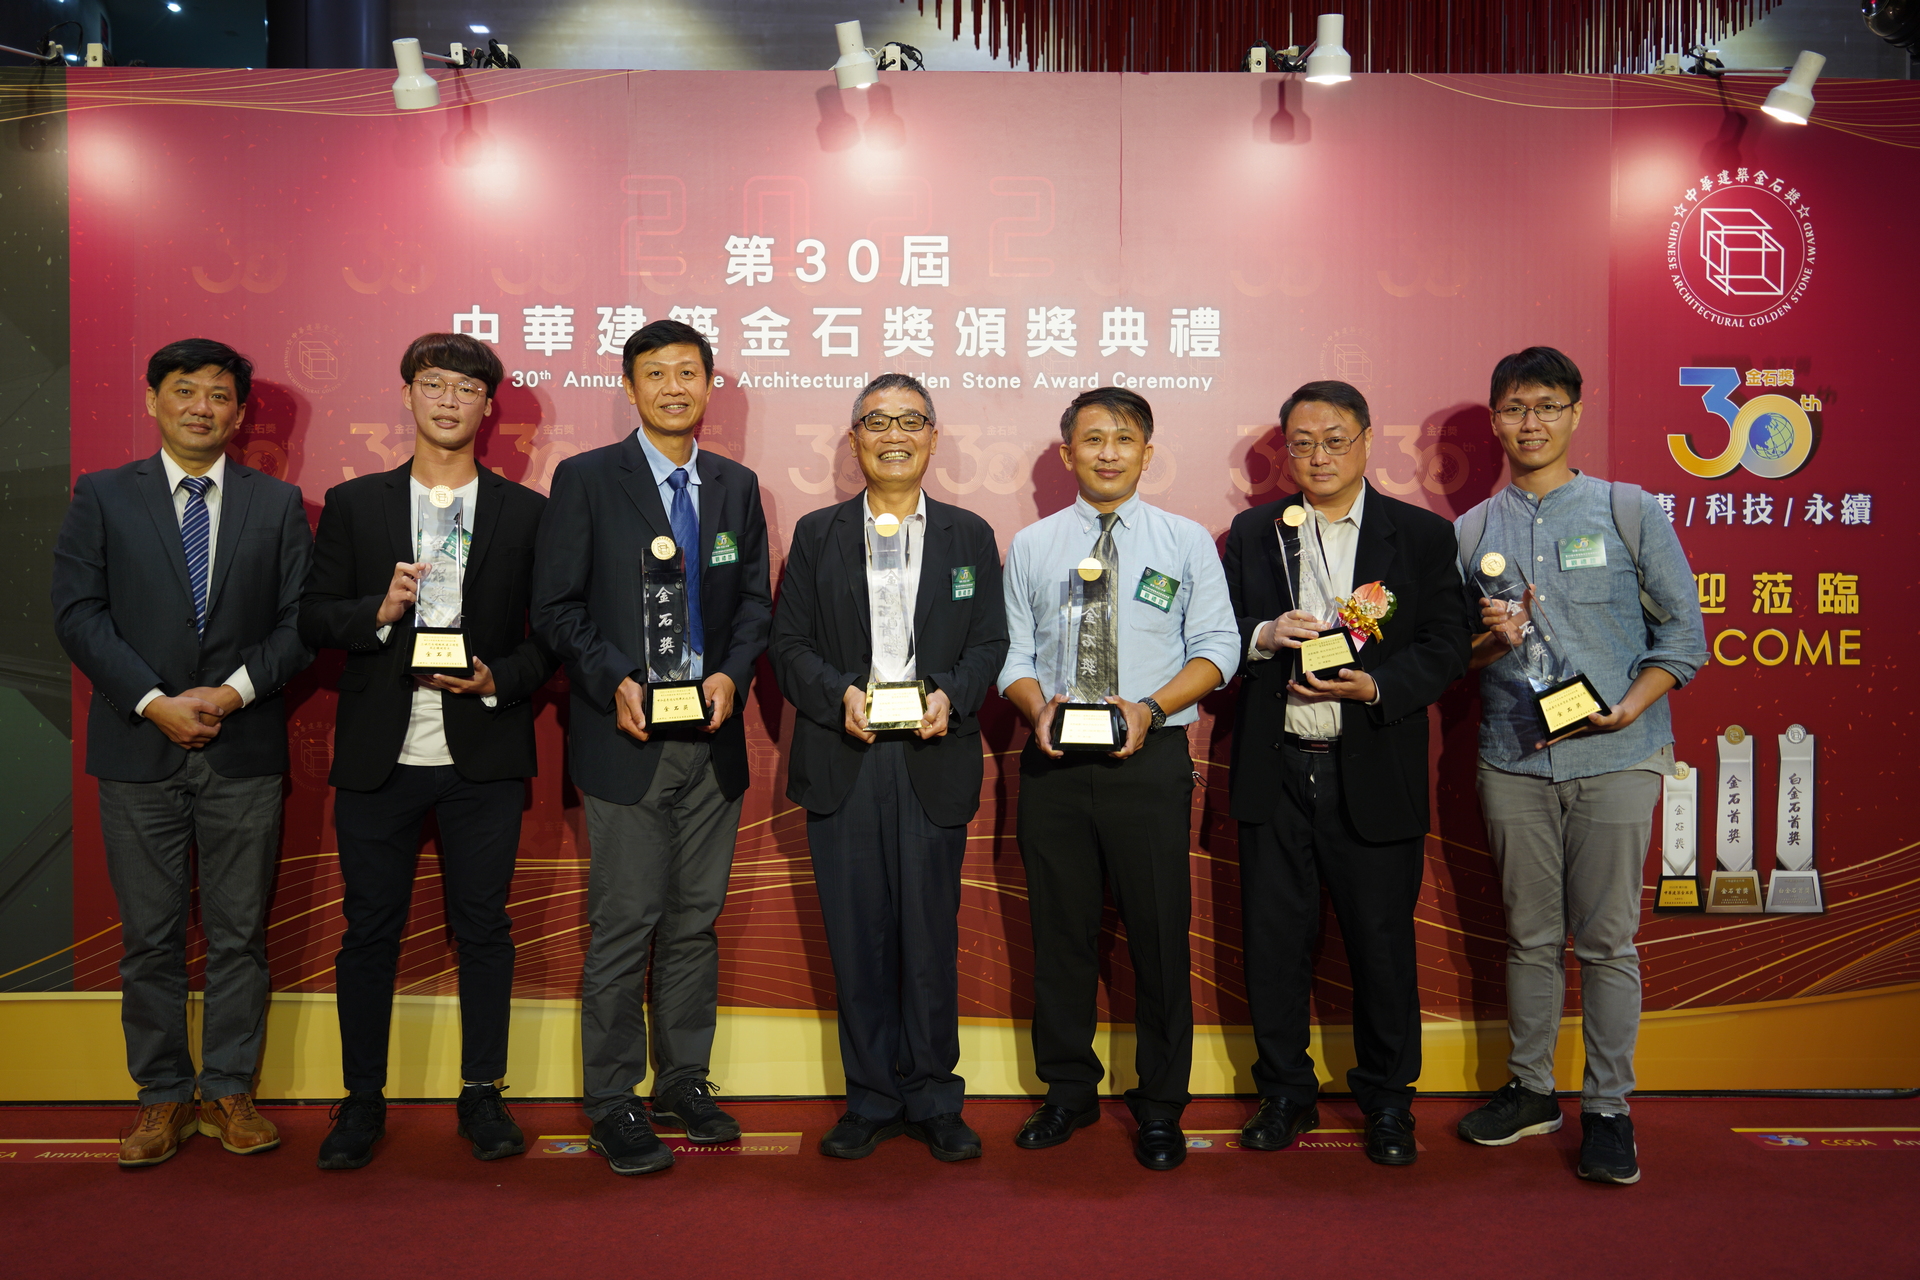 水利局參加第30屆中華建築金石獎獲得10項大獎肯定